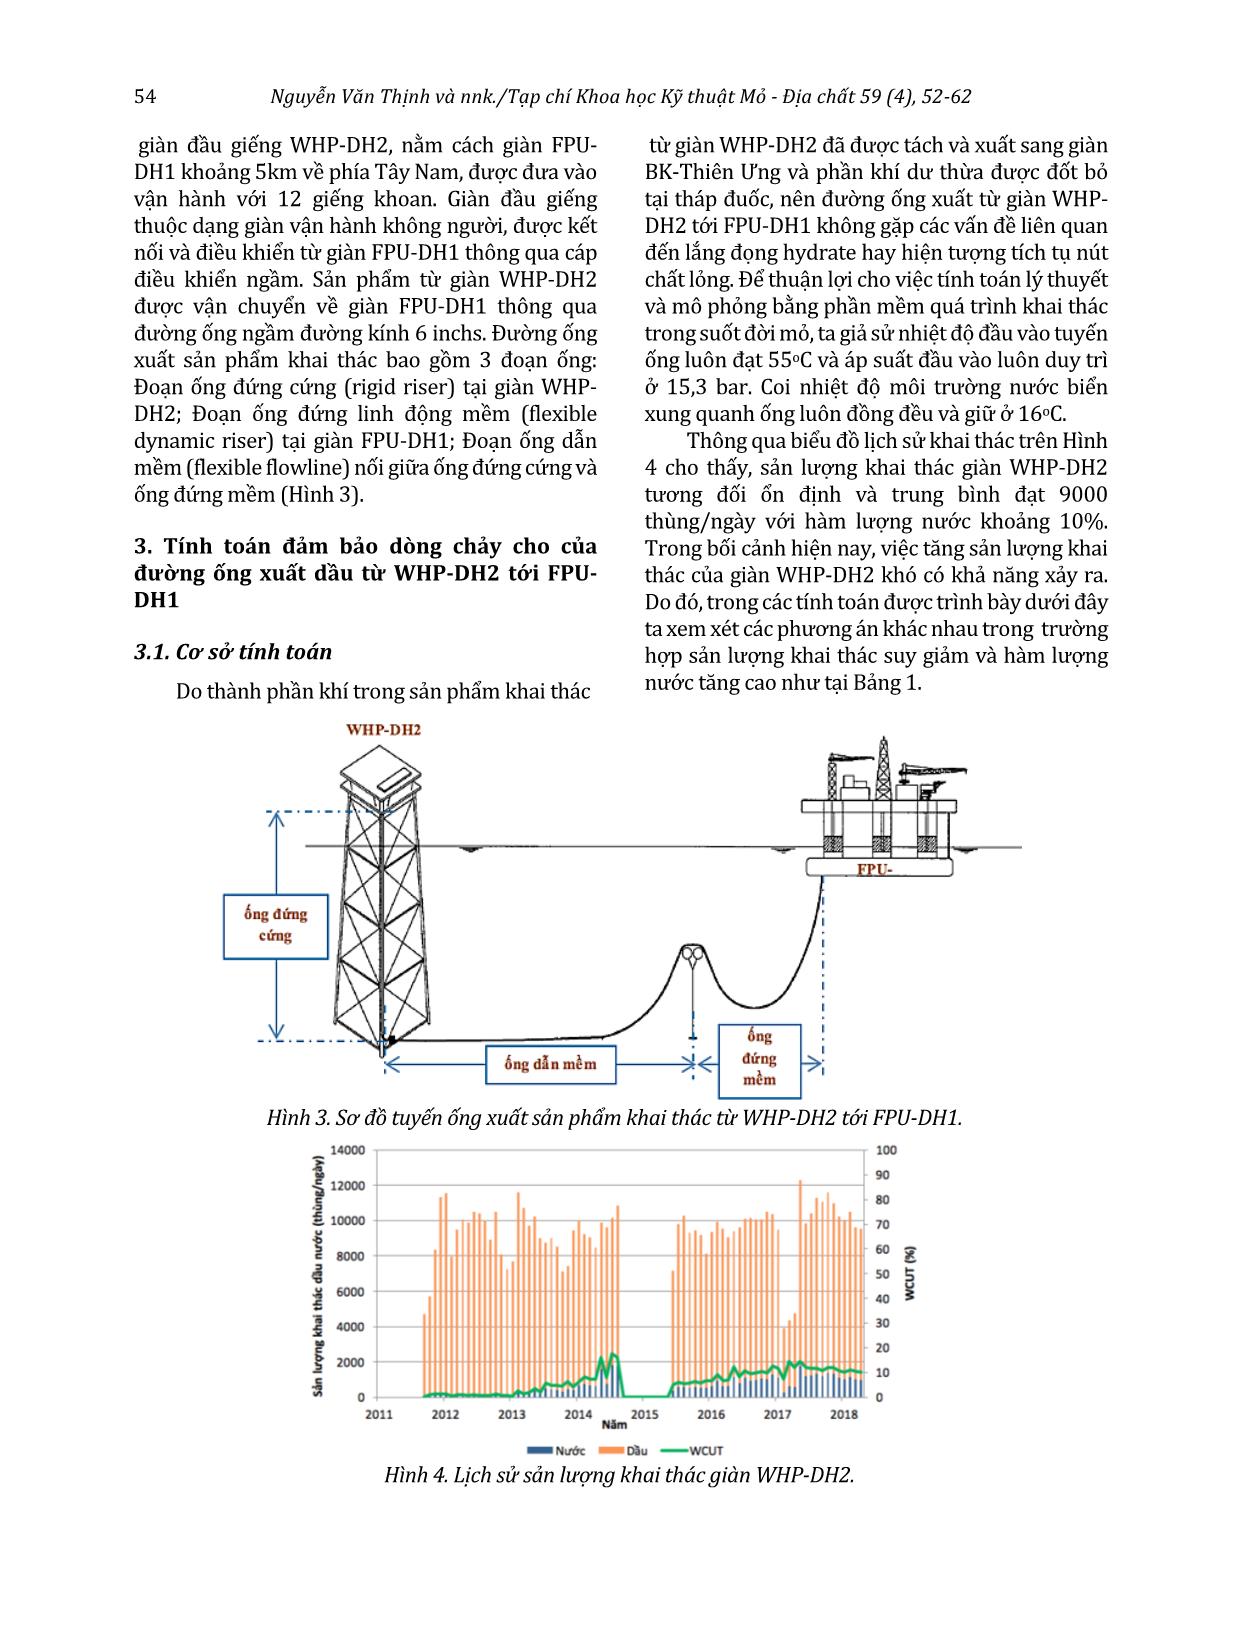 Nghiên cứu giải pháp đảm bảo dòng chảy cho đường ống vận chuyển dầu từ giàn WHP-DH2 tới giàn FPU-DH1 mỏ Đại Hùng trang 3